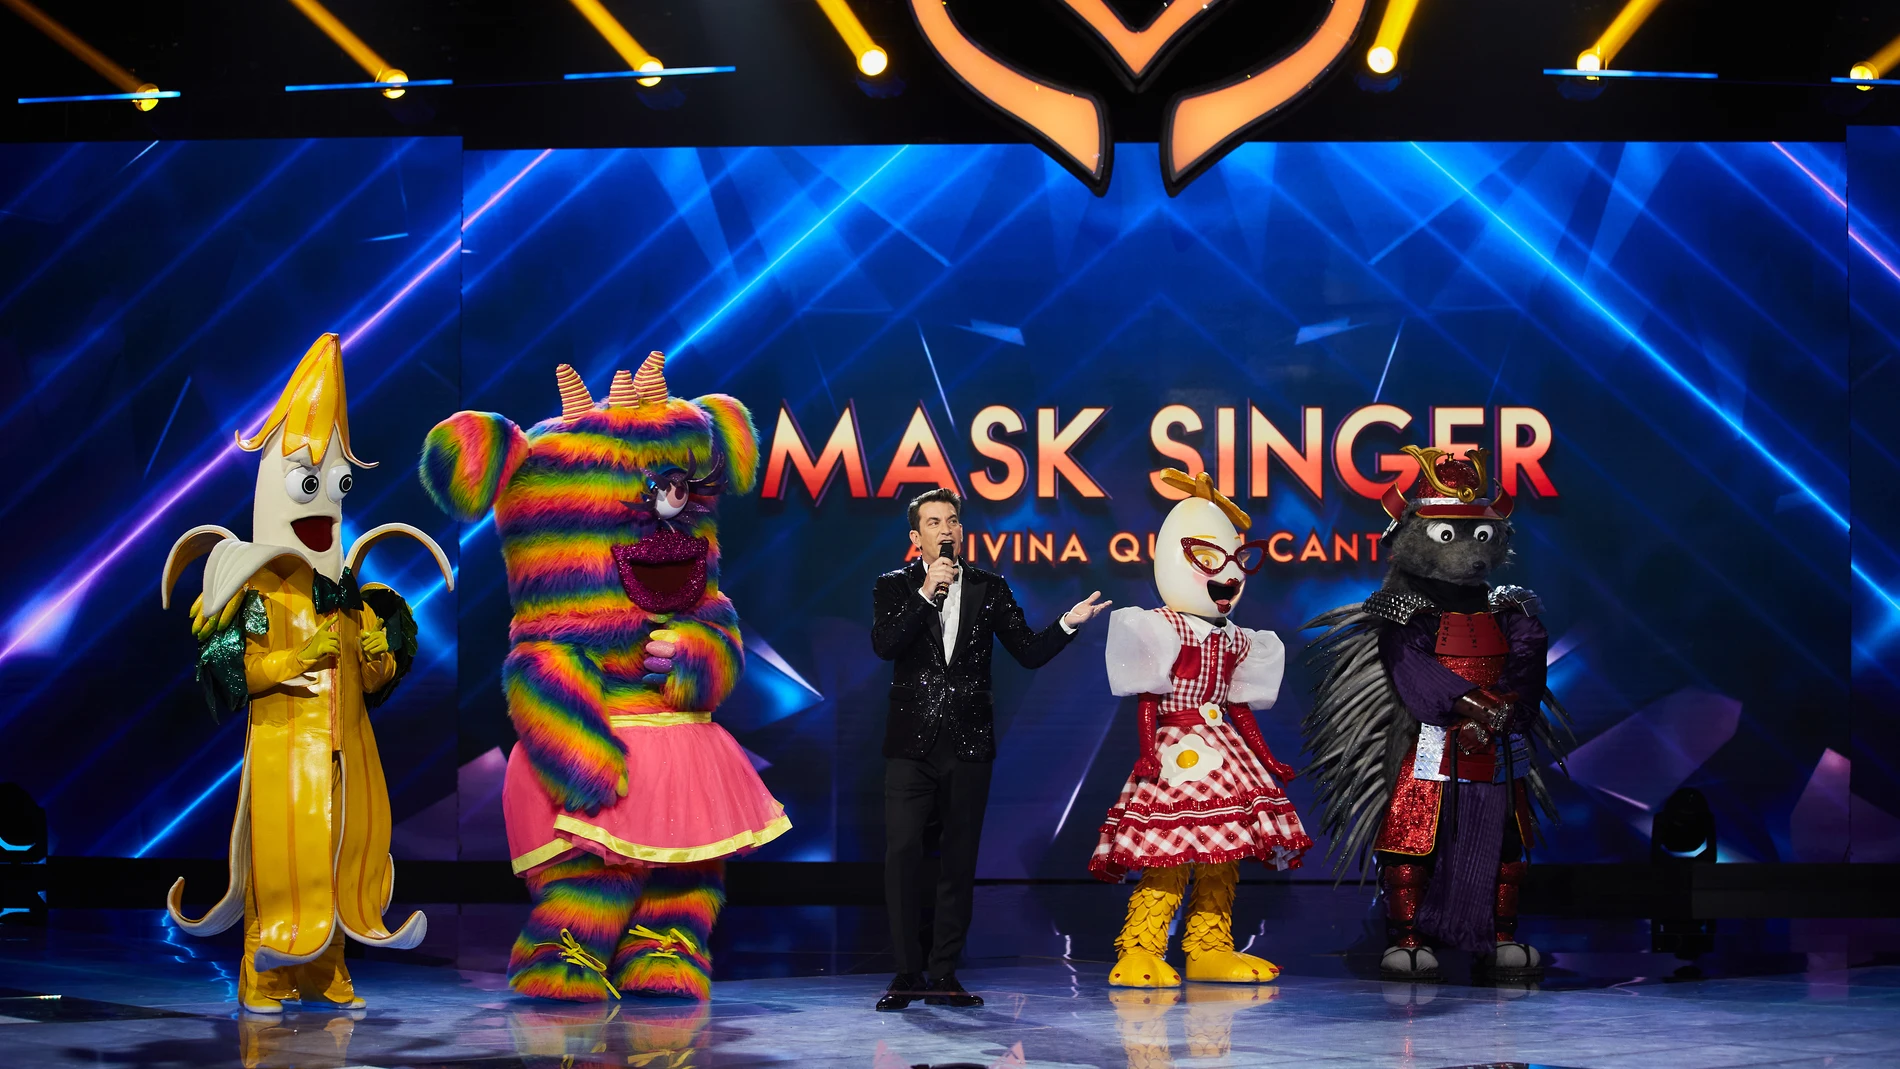 La gran final de 'Mask Singer' llega el jueves a las 22:45 a Antena 3